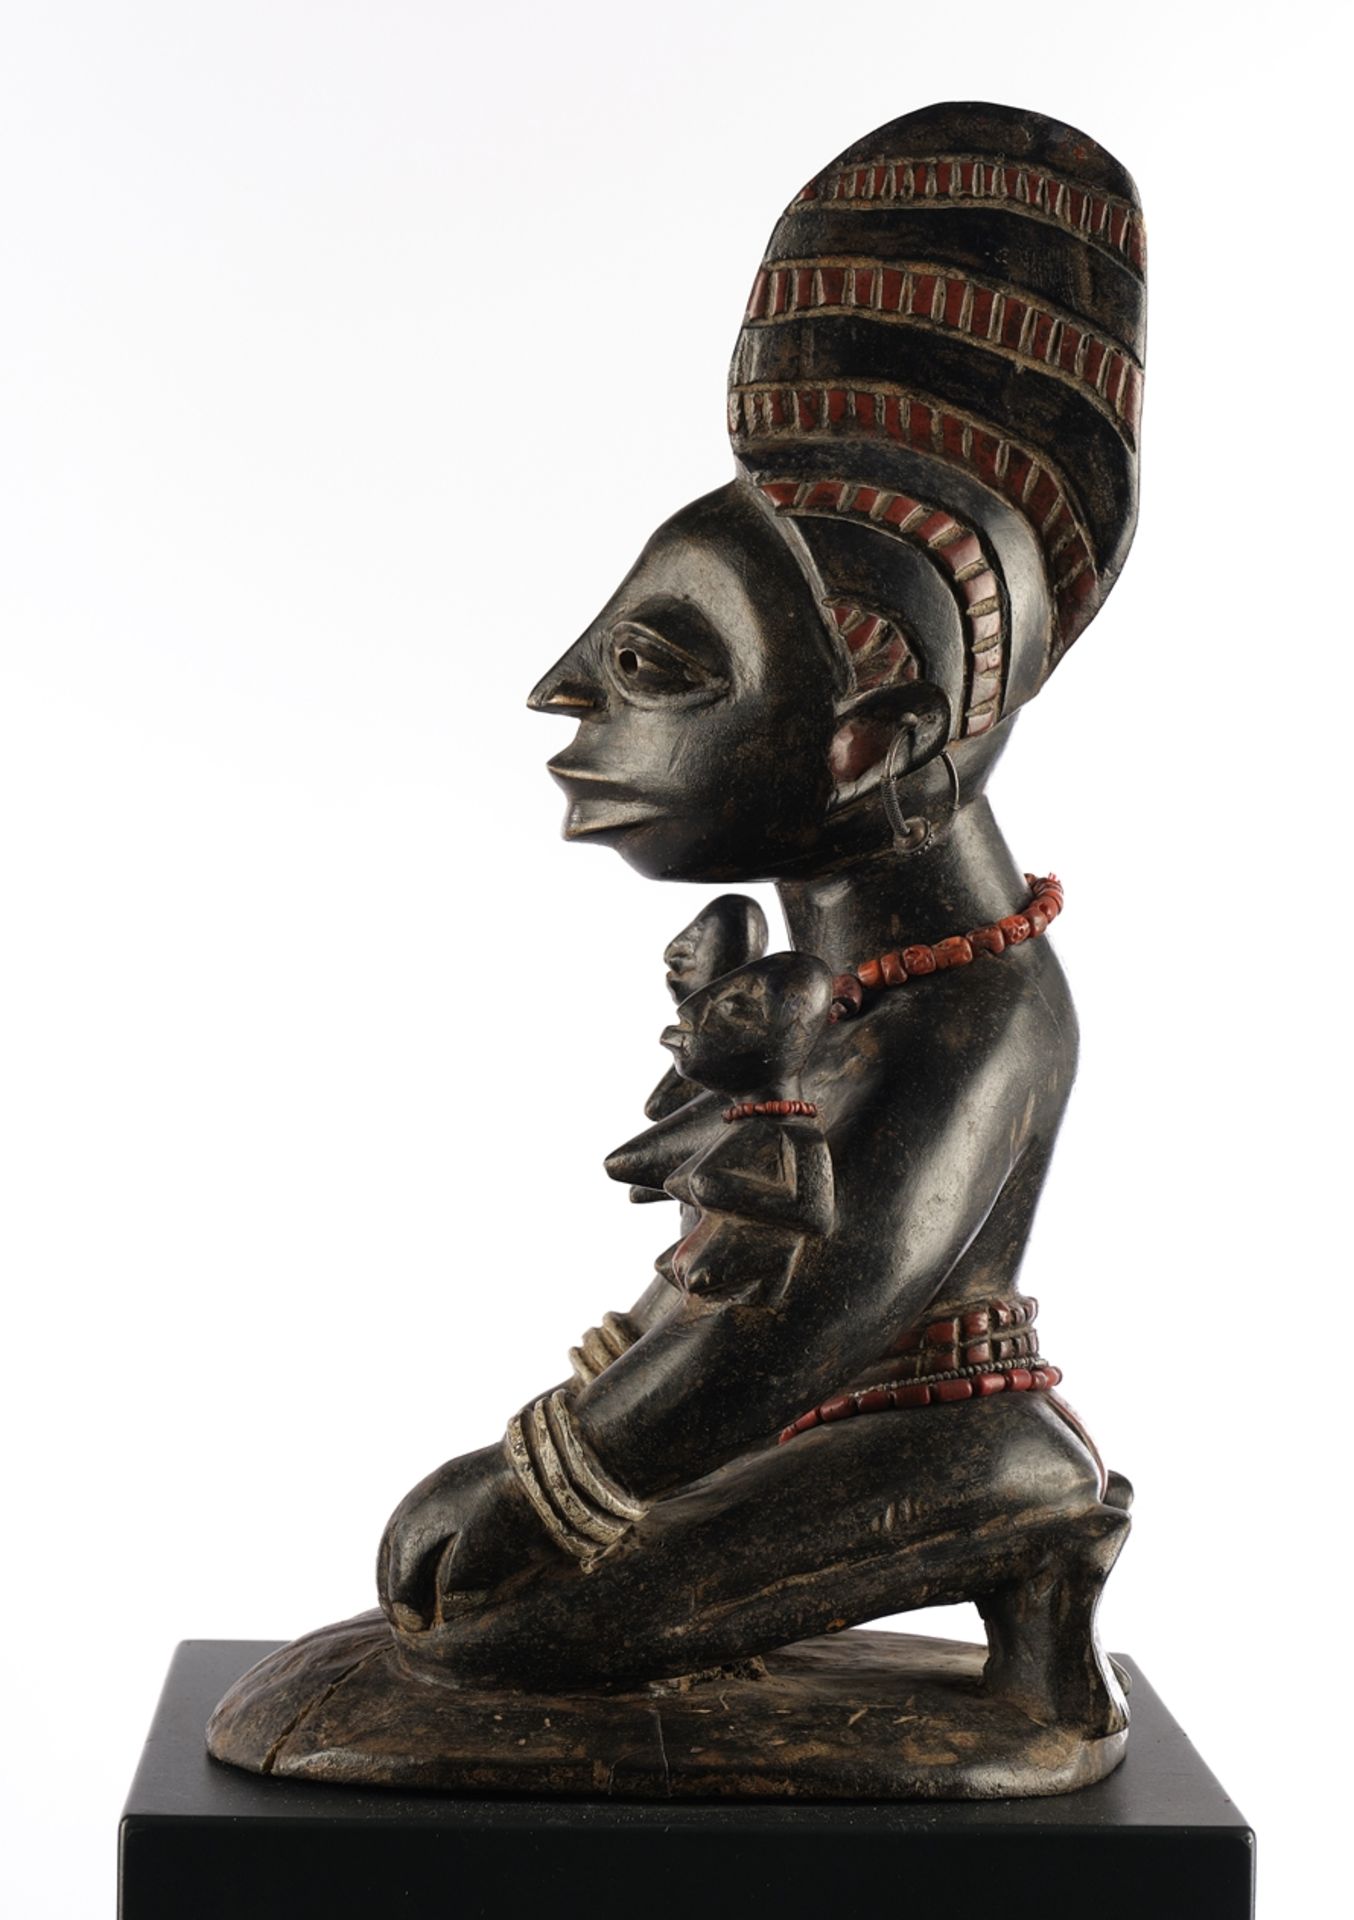 Figur, weiblich, Yoruba, Nigeria, Afrika, Holz, dunkel patiniert, Mutterfigur kniend mit zwei Kinde - Bild 4 aus 4